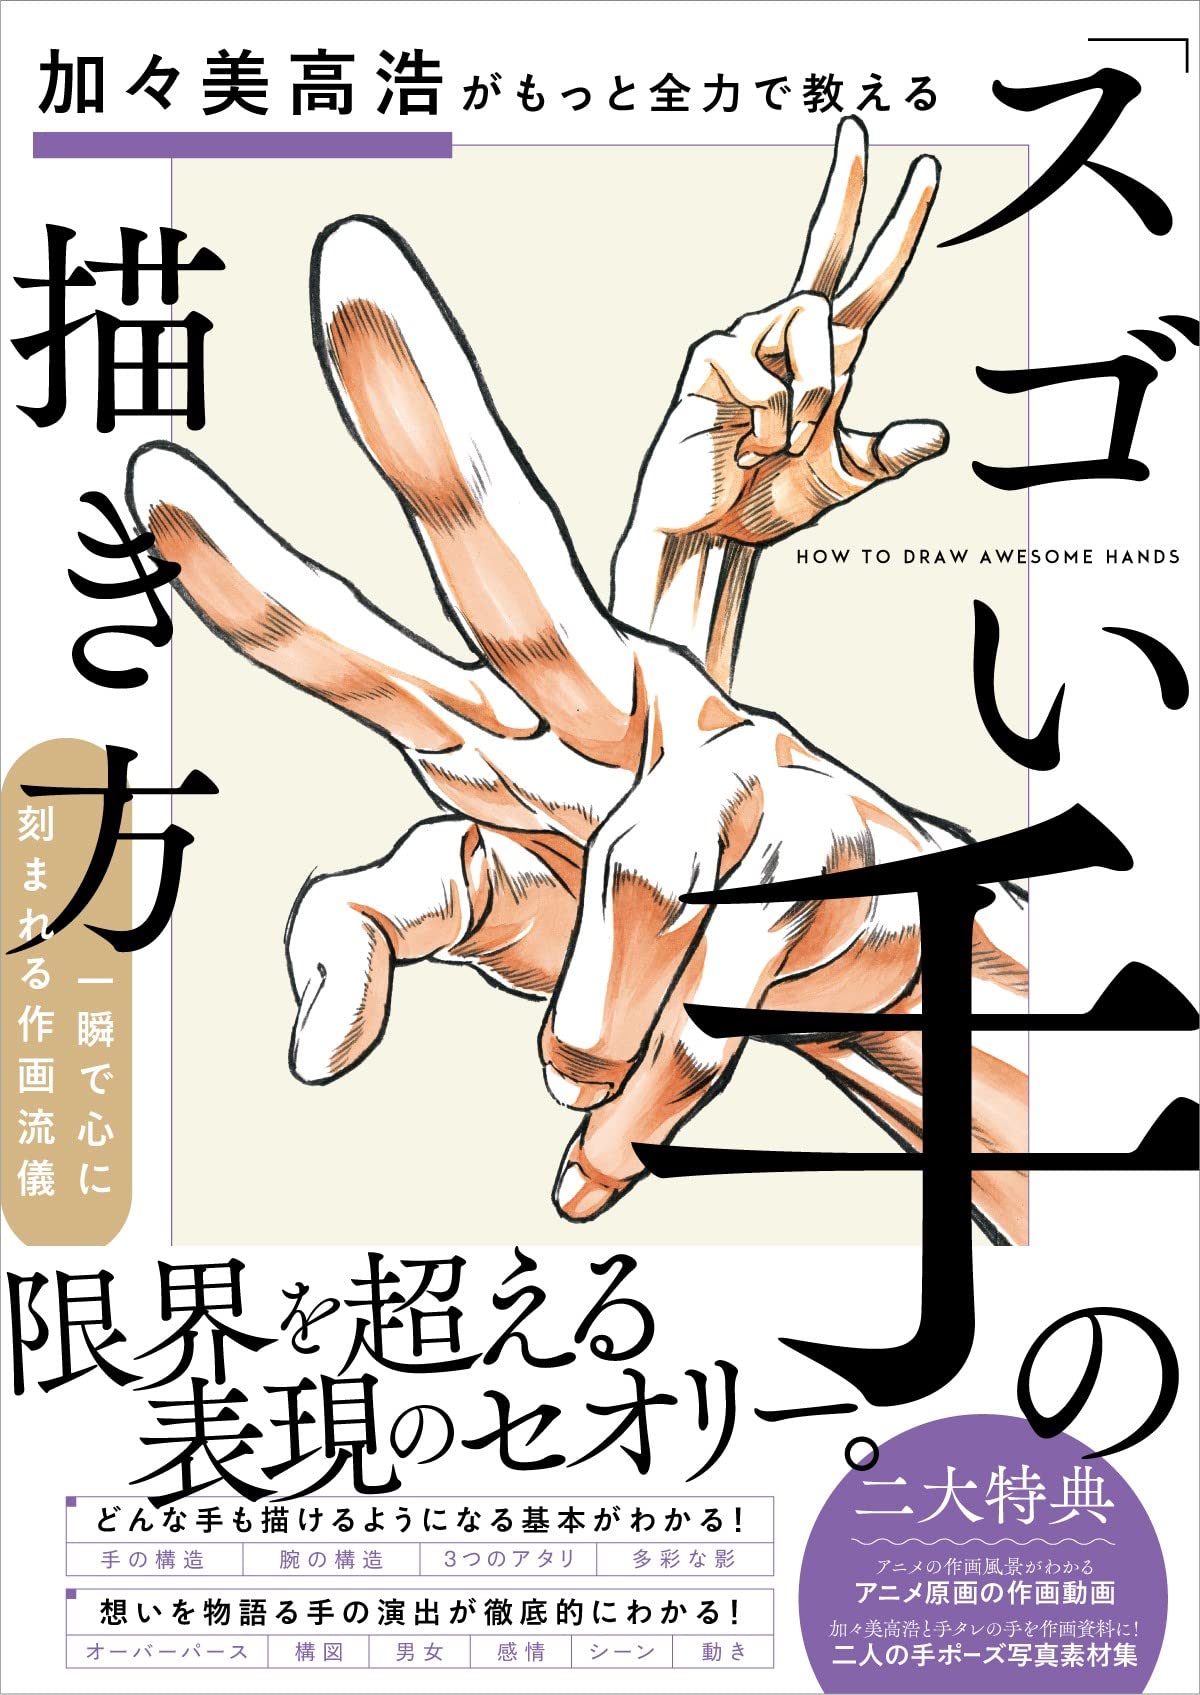 加-美高浩がもっと全力で敎える「スゴい手」の描き方